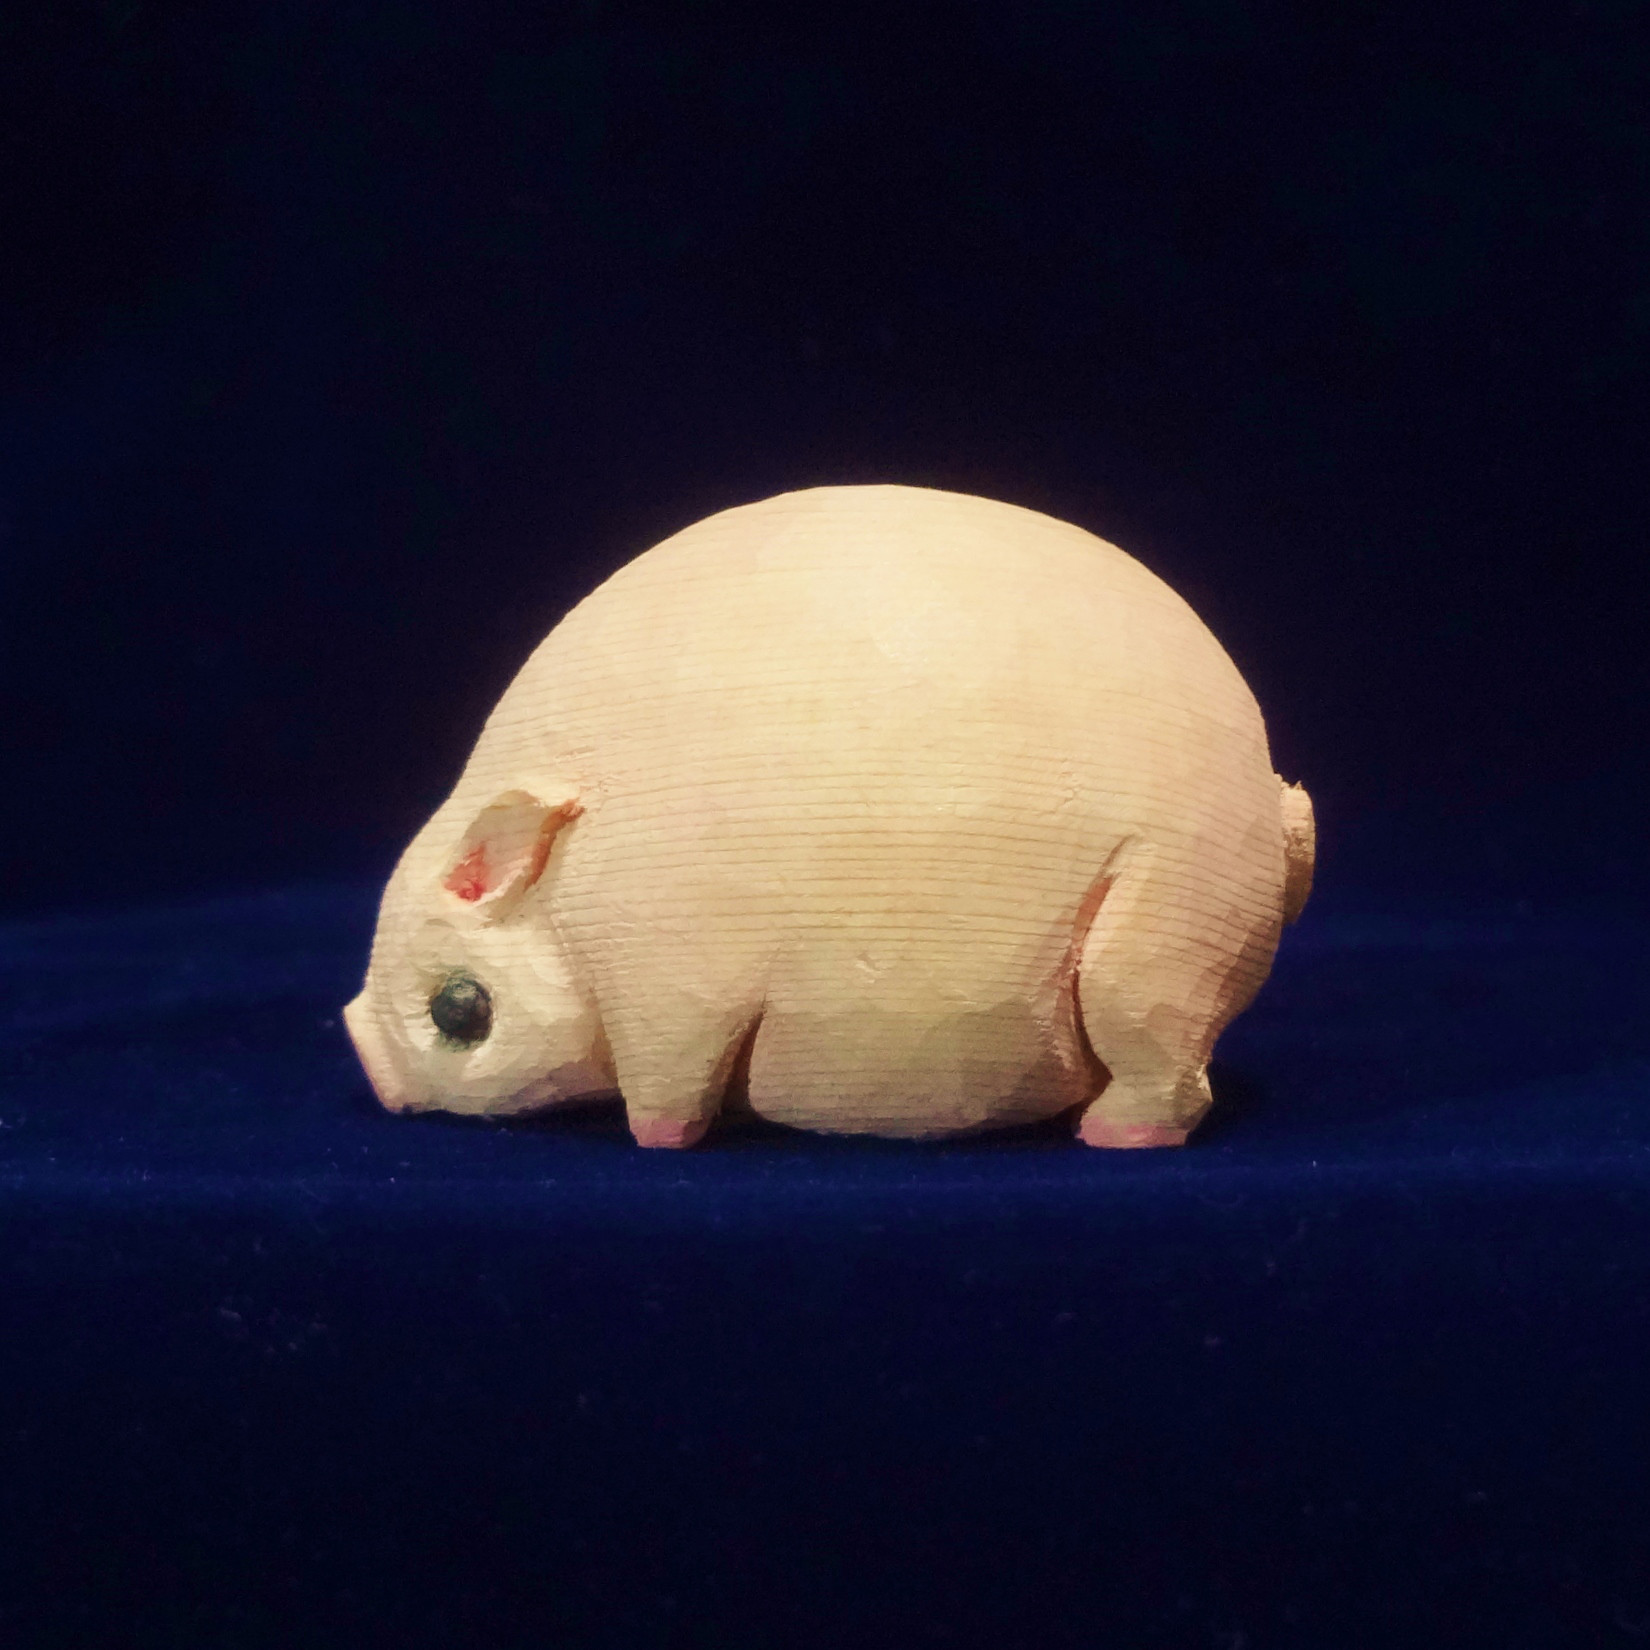 木彫刻 アート『 ぶた 』 豚 動物 芸術 アート ハンドメイド 松 手彫り